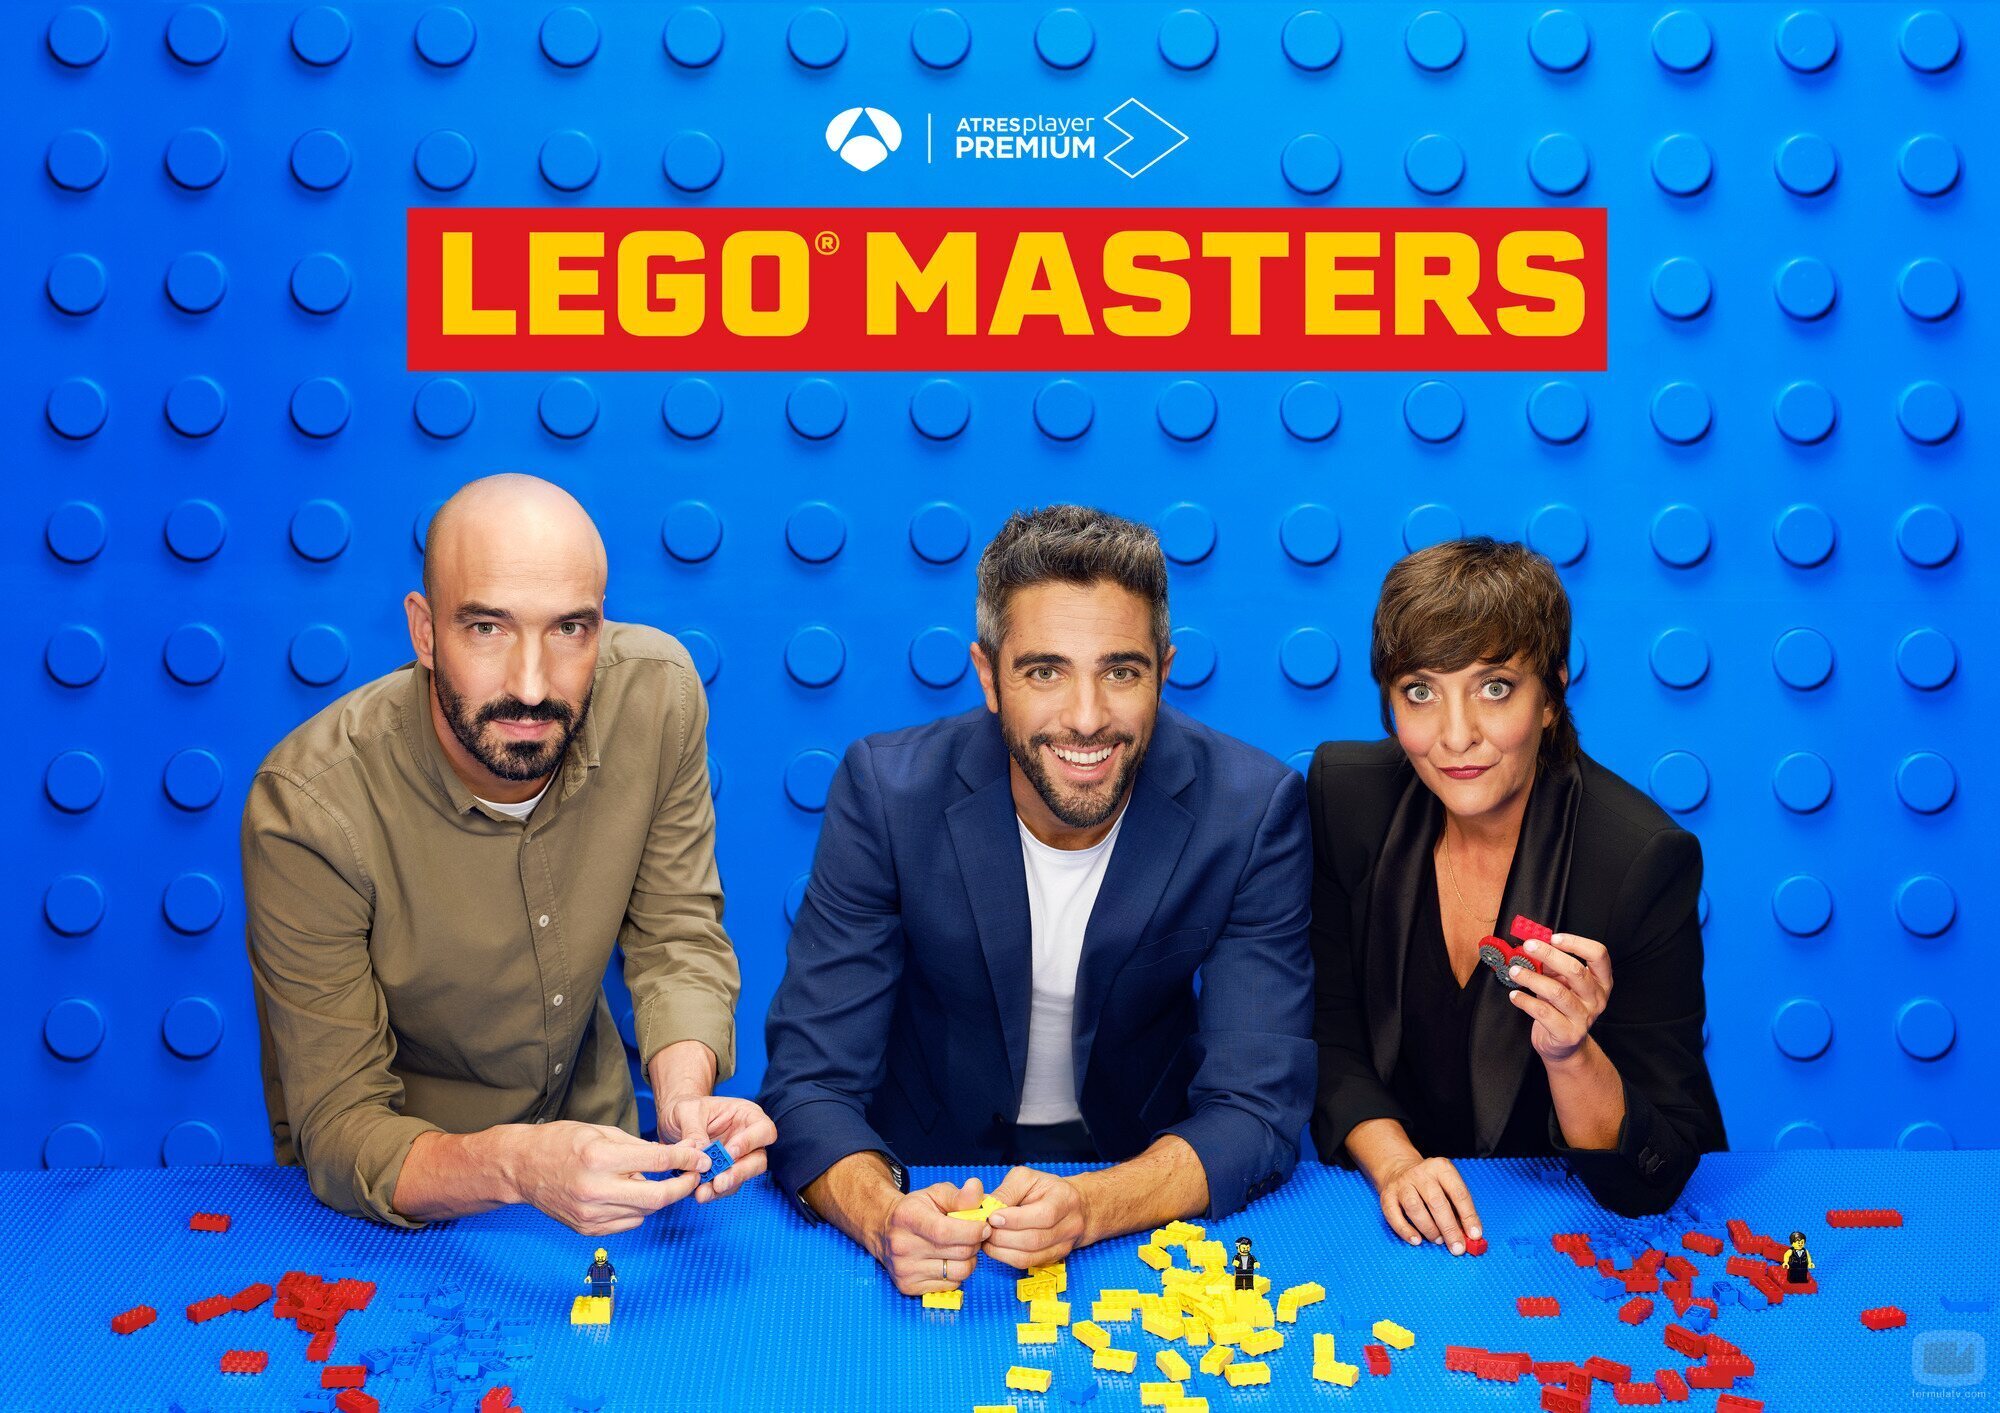 Pablo González, Roberto Leal y Eva Hache, en 'Lego Masters'